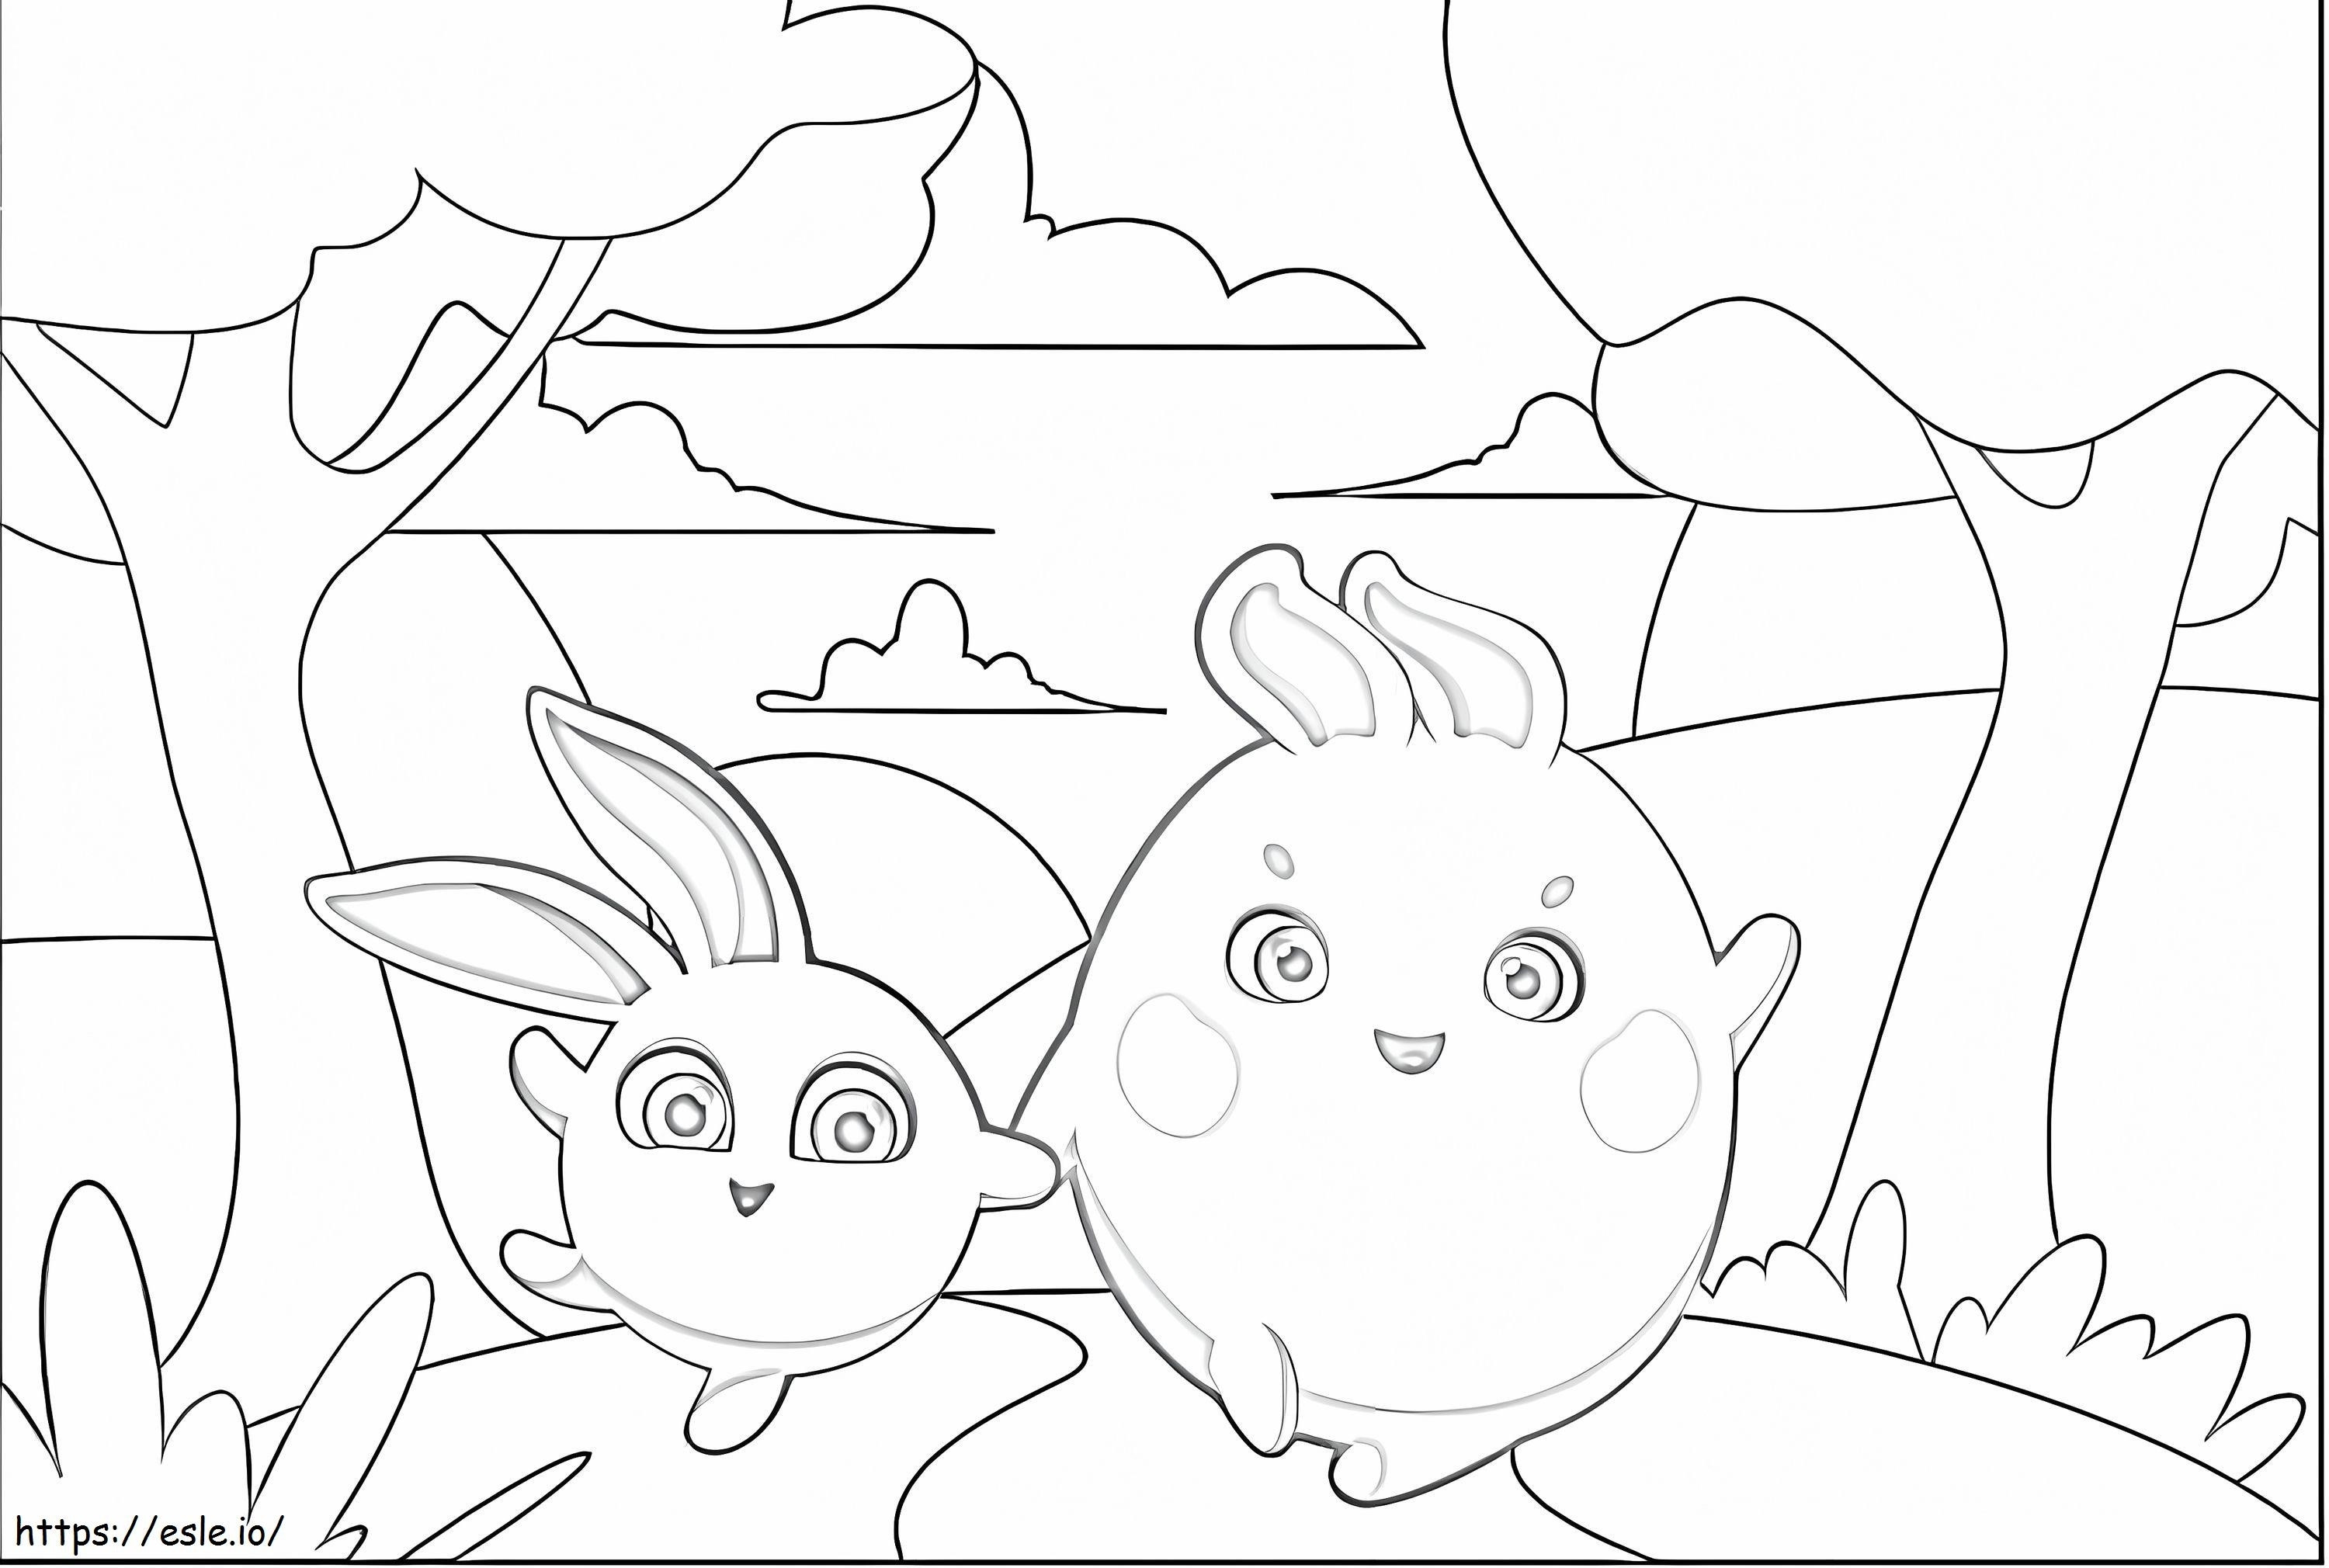 Happy Bunnies coloring page